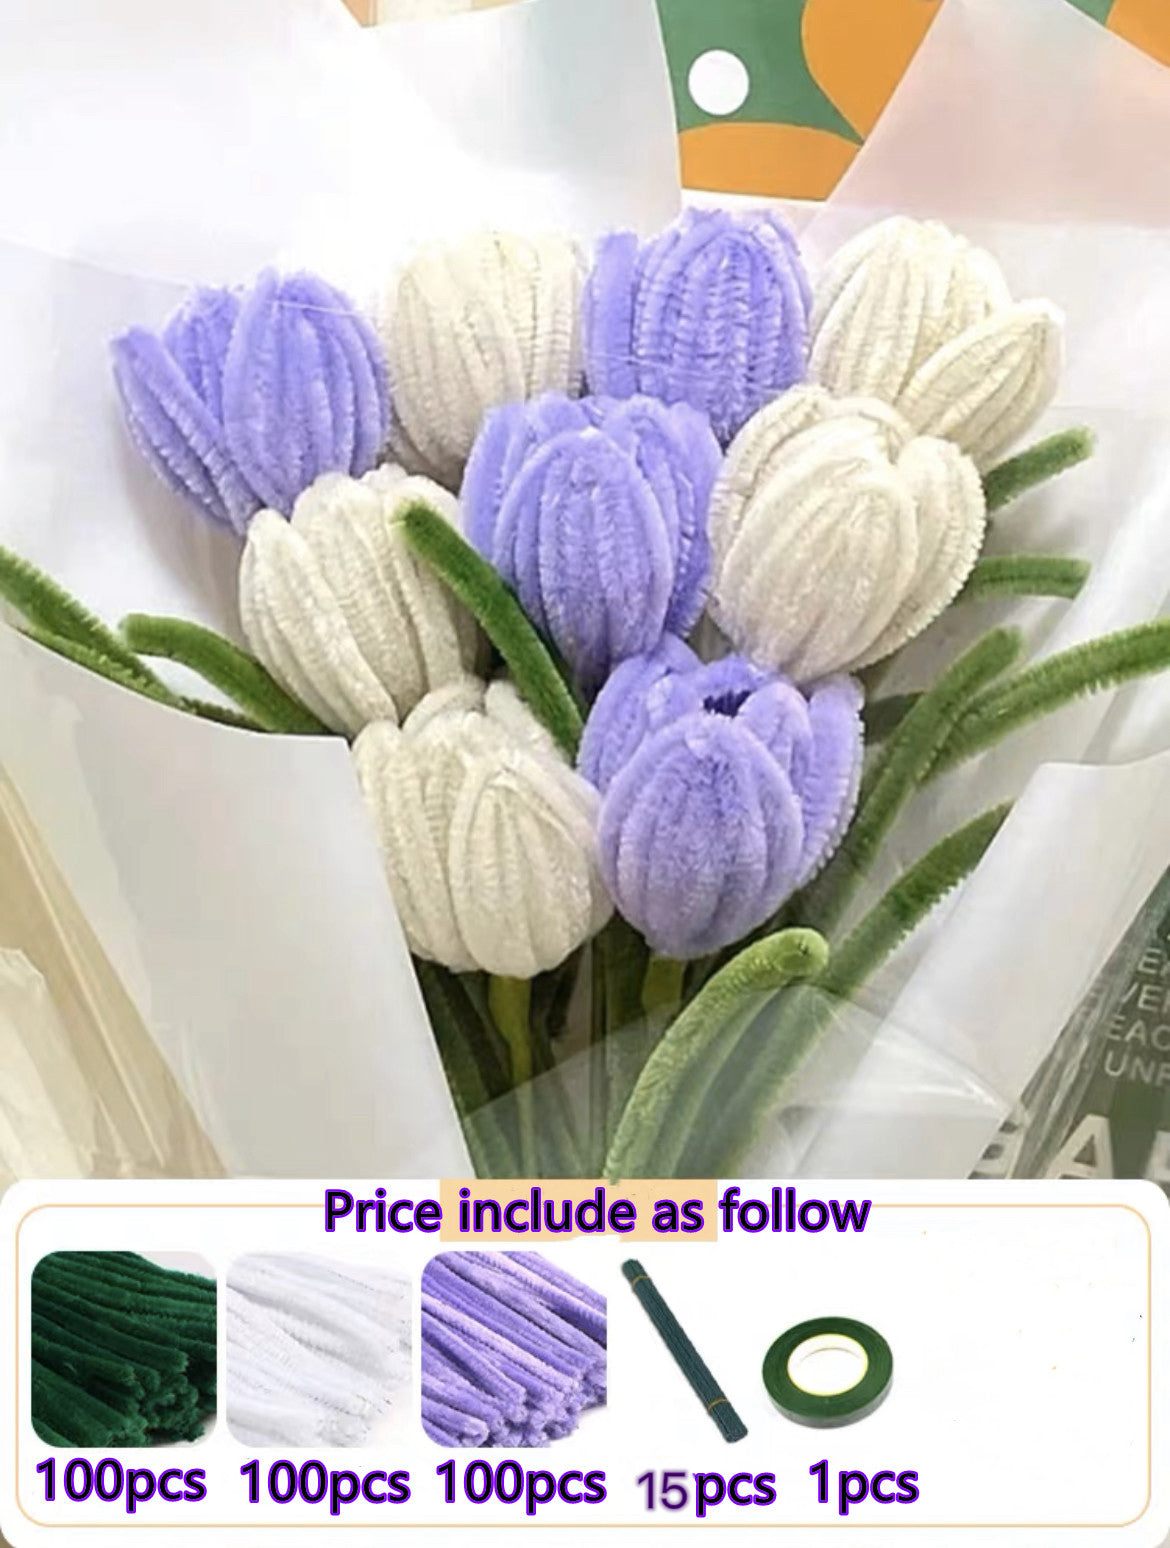 DIY Pipecleaner Lavender Flowers Tutorial